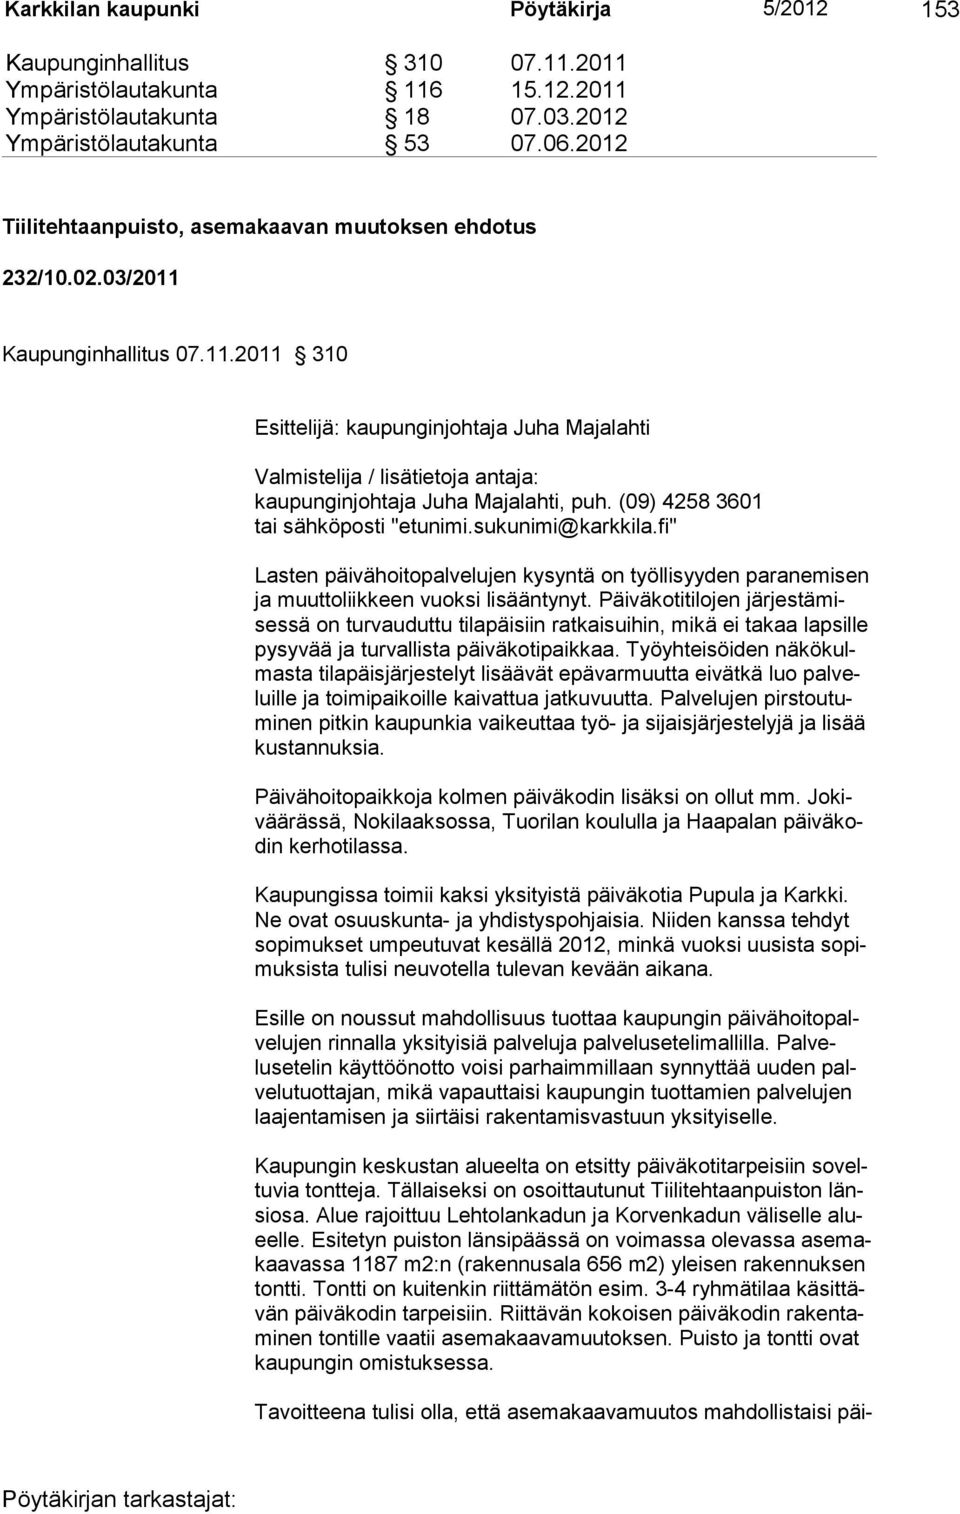 (09) 4258 3601 tai sähköposti "etunimi.sukunimi@karkkila.fi" Lasten päivähoitopalvelujen kysyntä on työllisyyden paranemisen ja muuttoliikkeen vuoksi lisääntynyt.